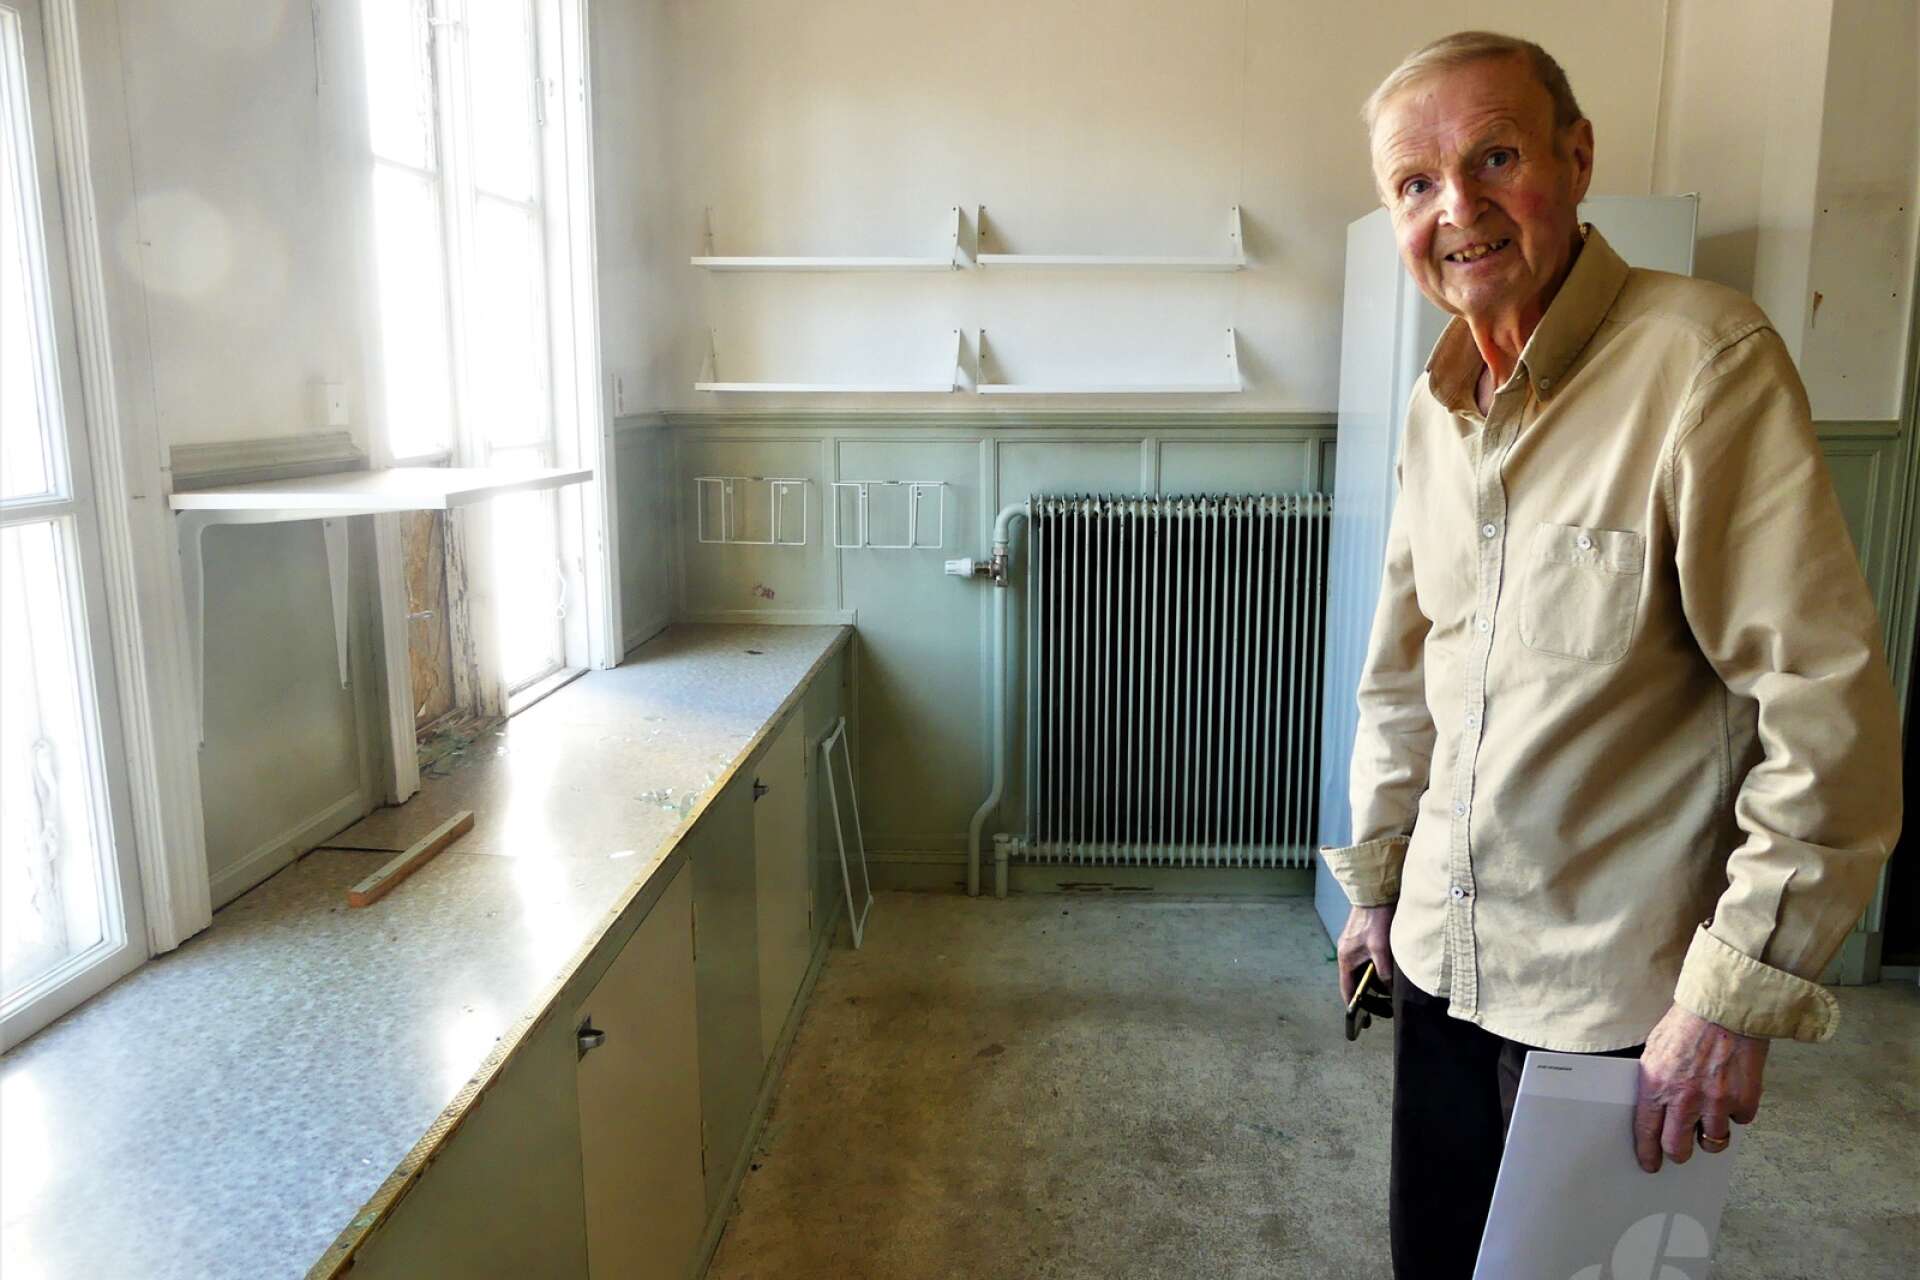 Arne Johansson visade stort intresse för det ålderdomliga köket, med låga arbetsbänkar, skafferi och annat.